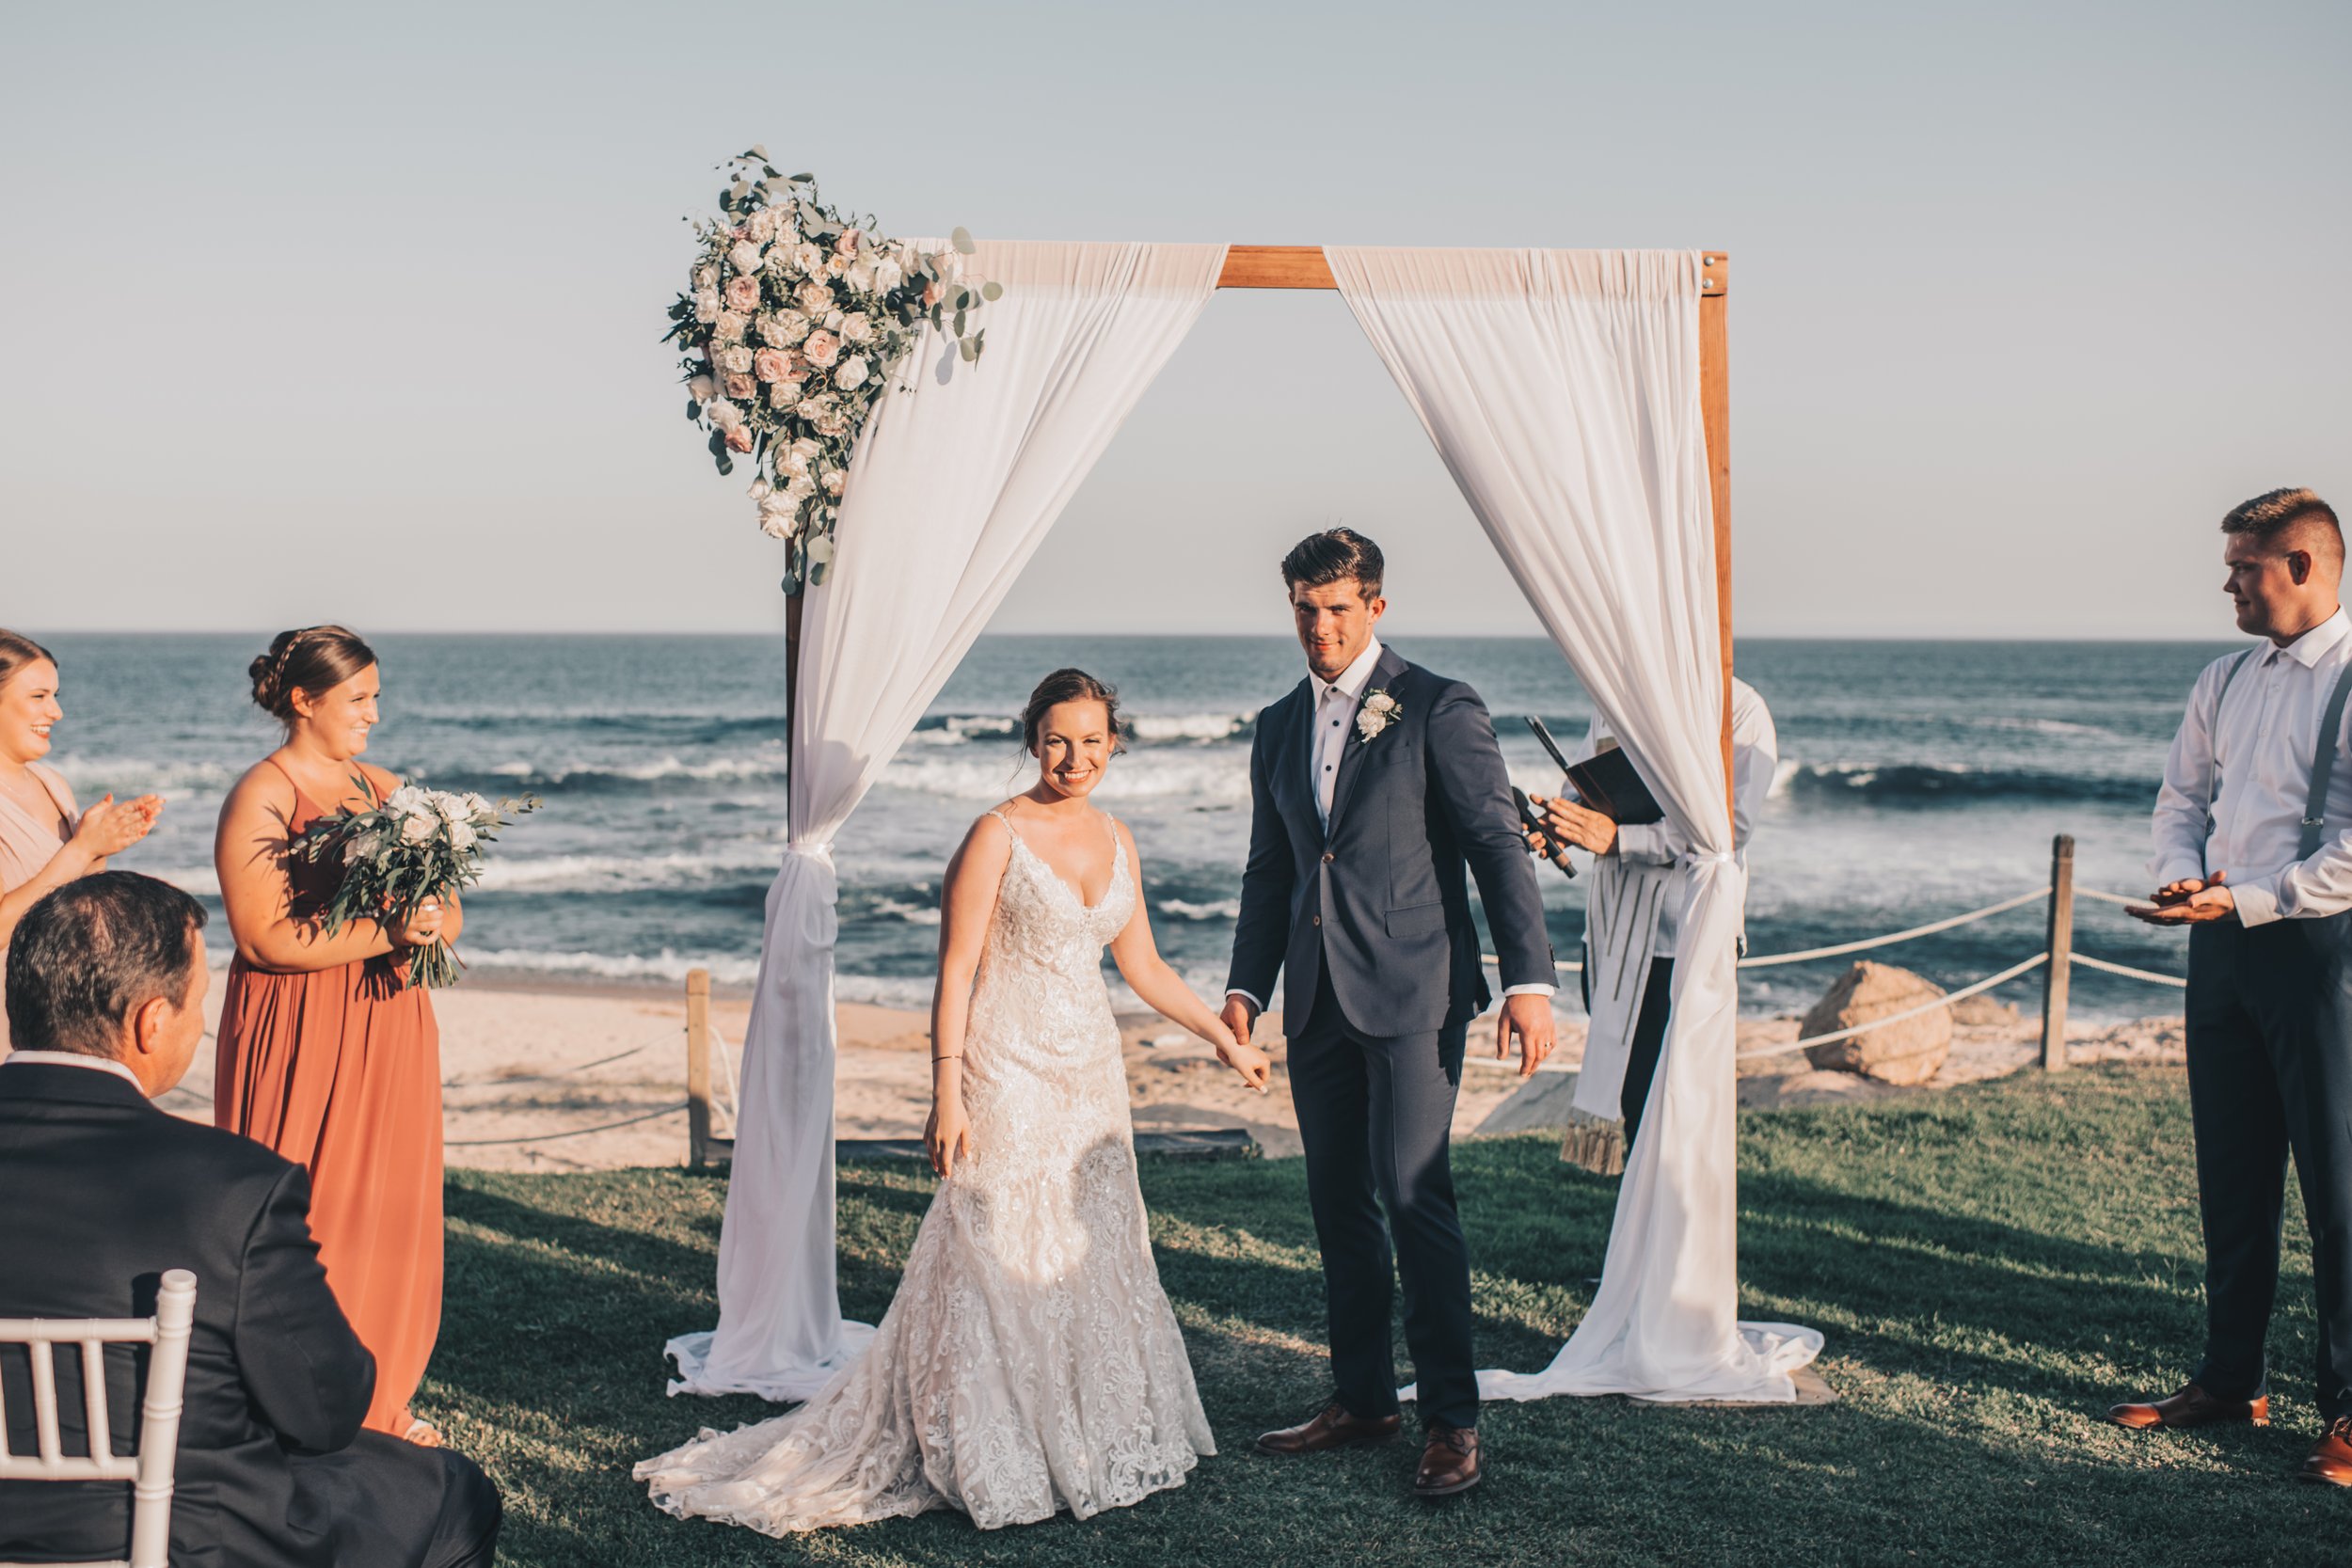 Cabo Wedding, Beach Wedding, Mexico Wedding, Coastal Beach Wedding, Summer Beach Wedding